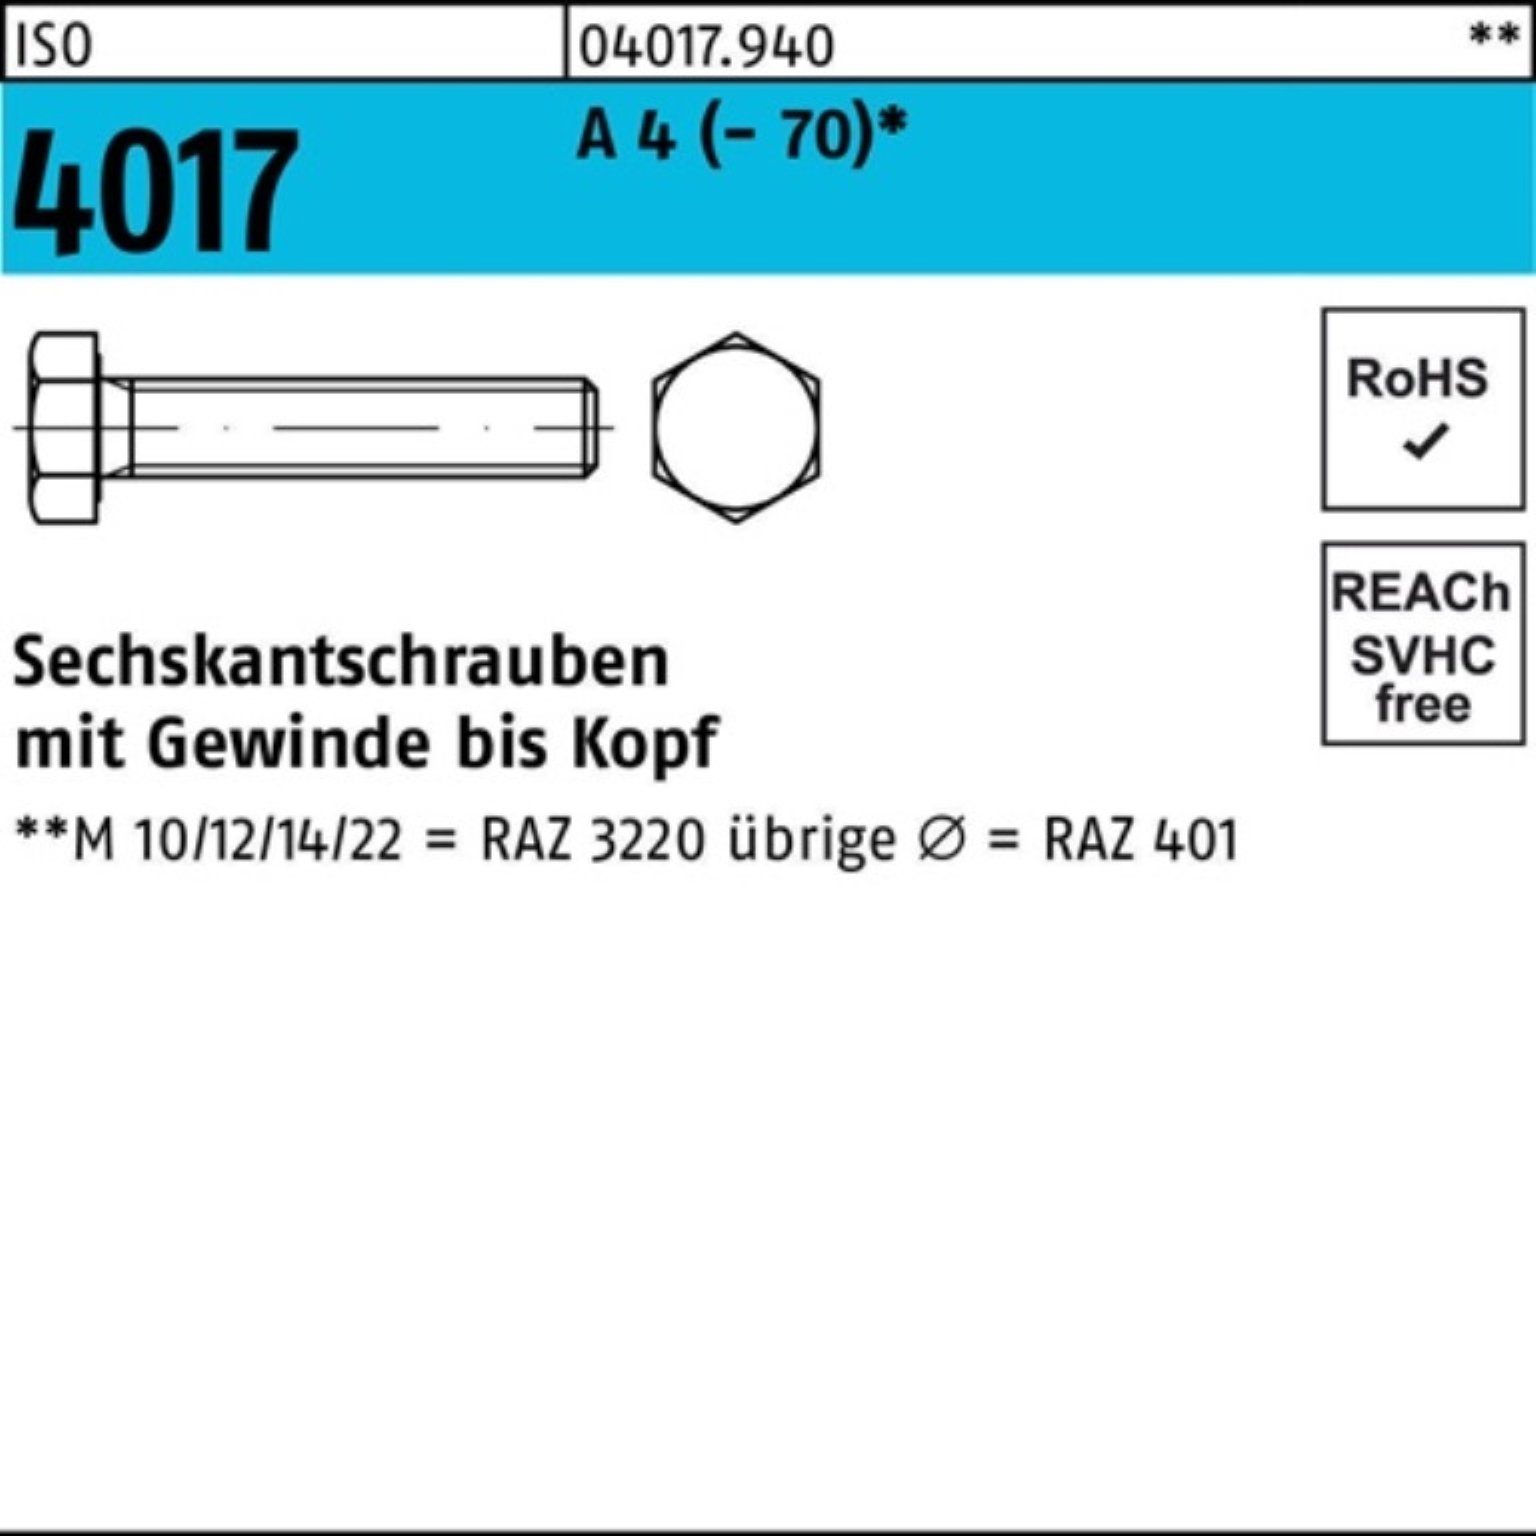 Bufab Sechskantschraube 100er Pack Sechskantschraube ISO 50 VG 4 4017 90 (70) Stück A M12x